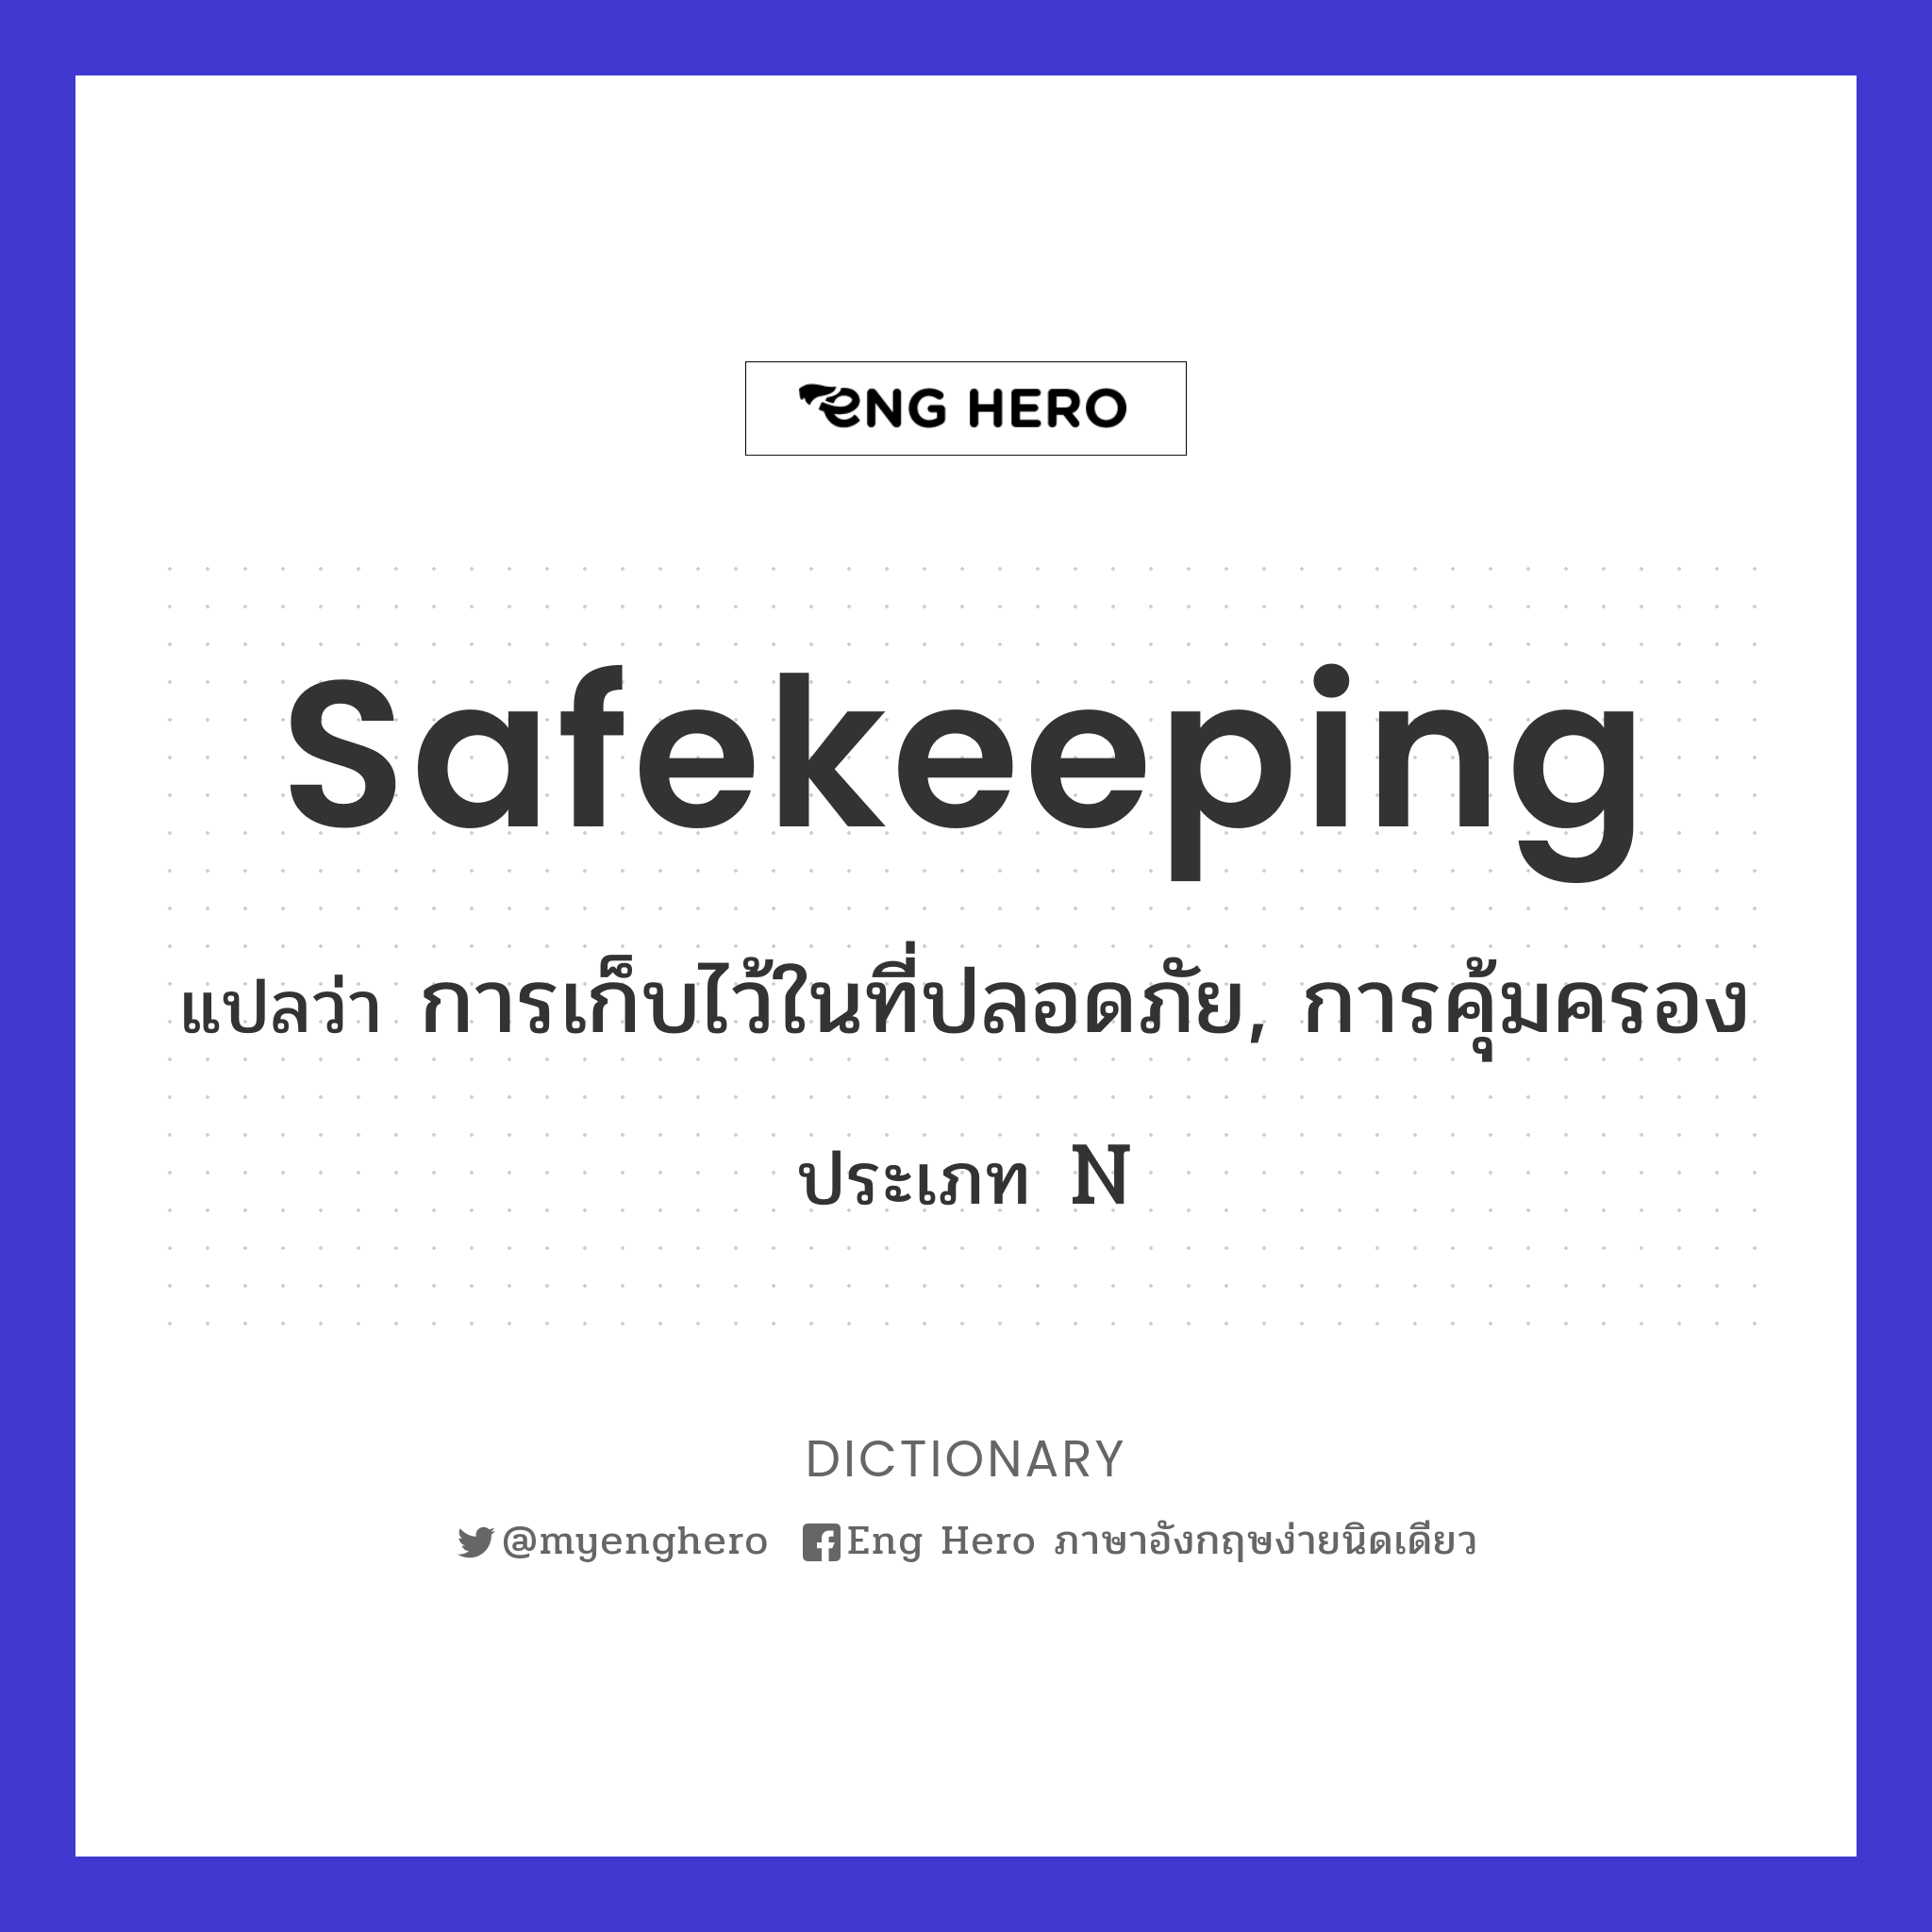 safekeeping